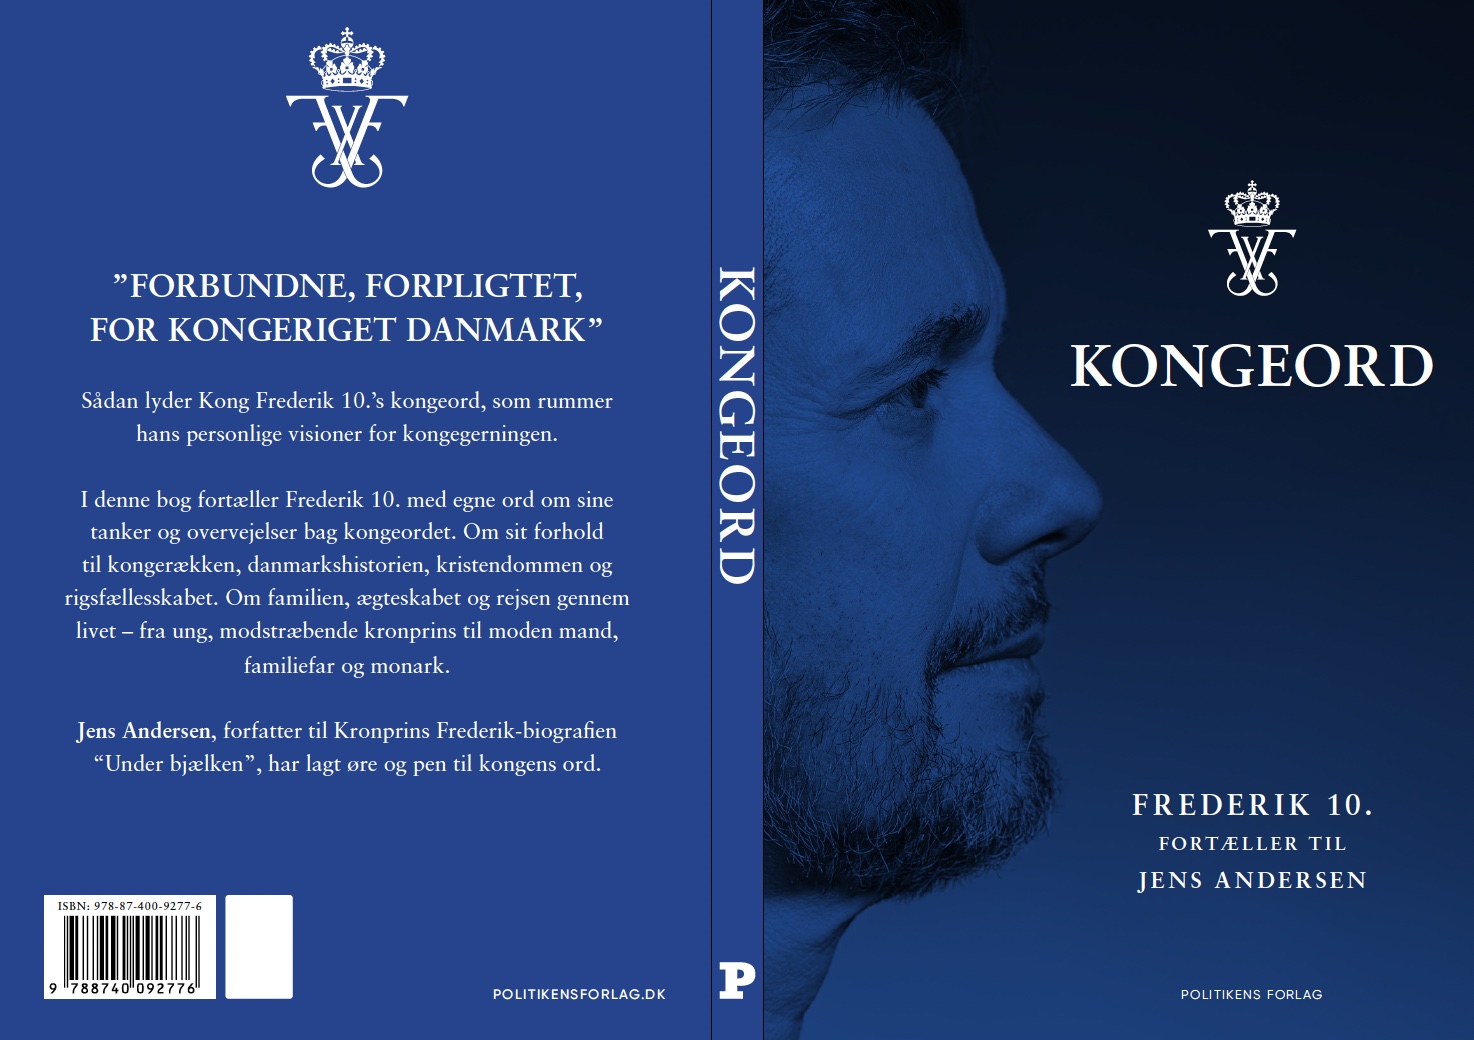 Kongeord Kong Frederik 10. fortæller til Jens Andersen.